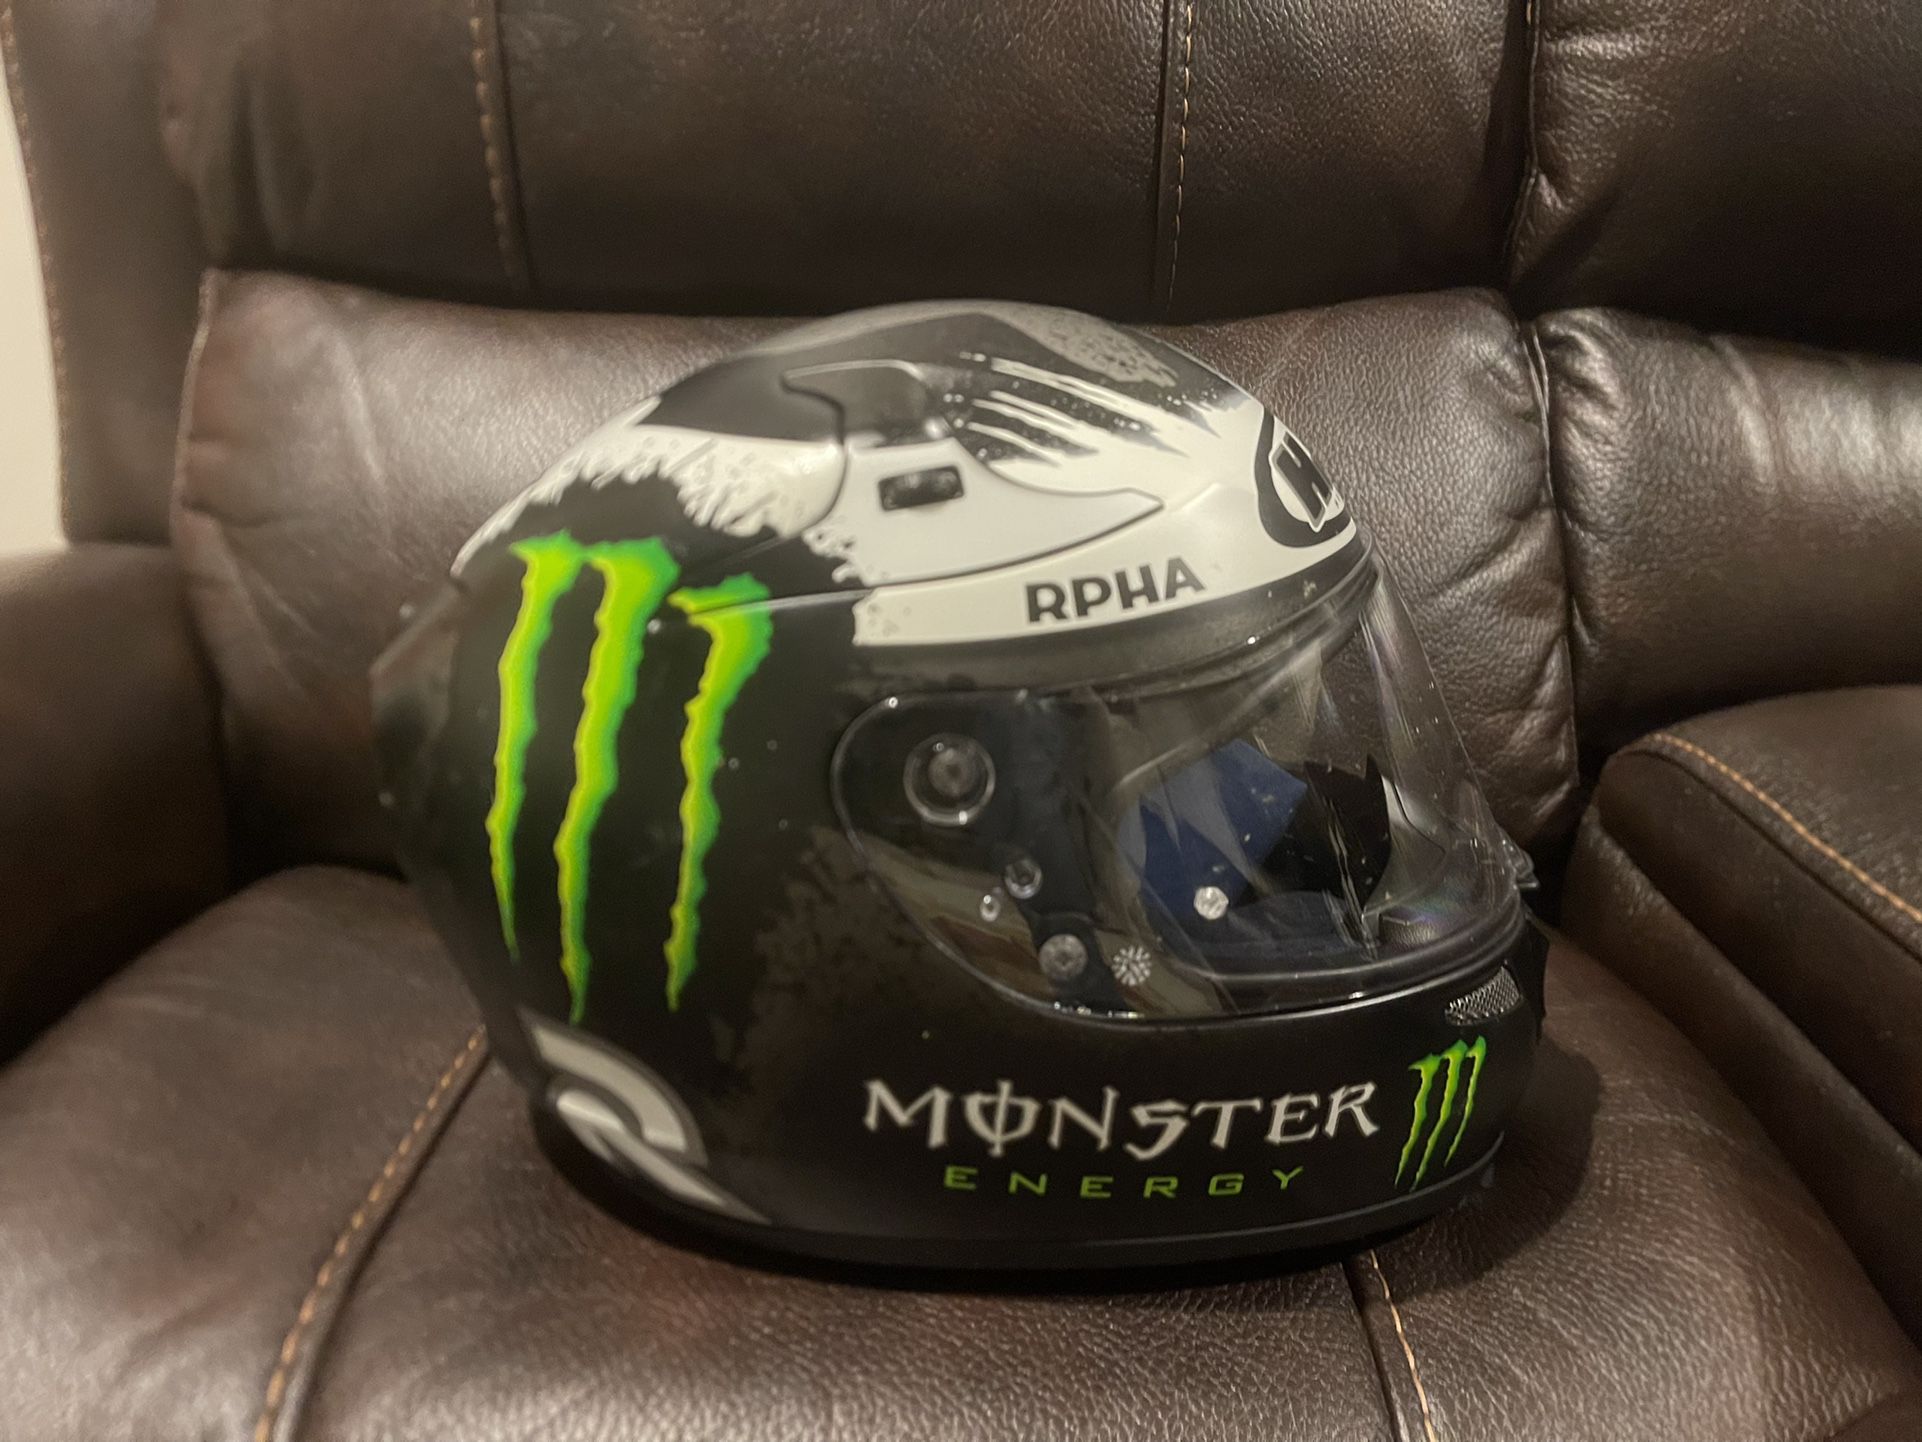 XL Monster helmet